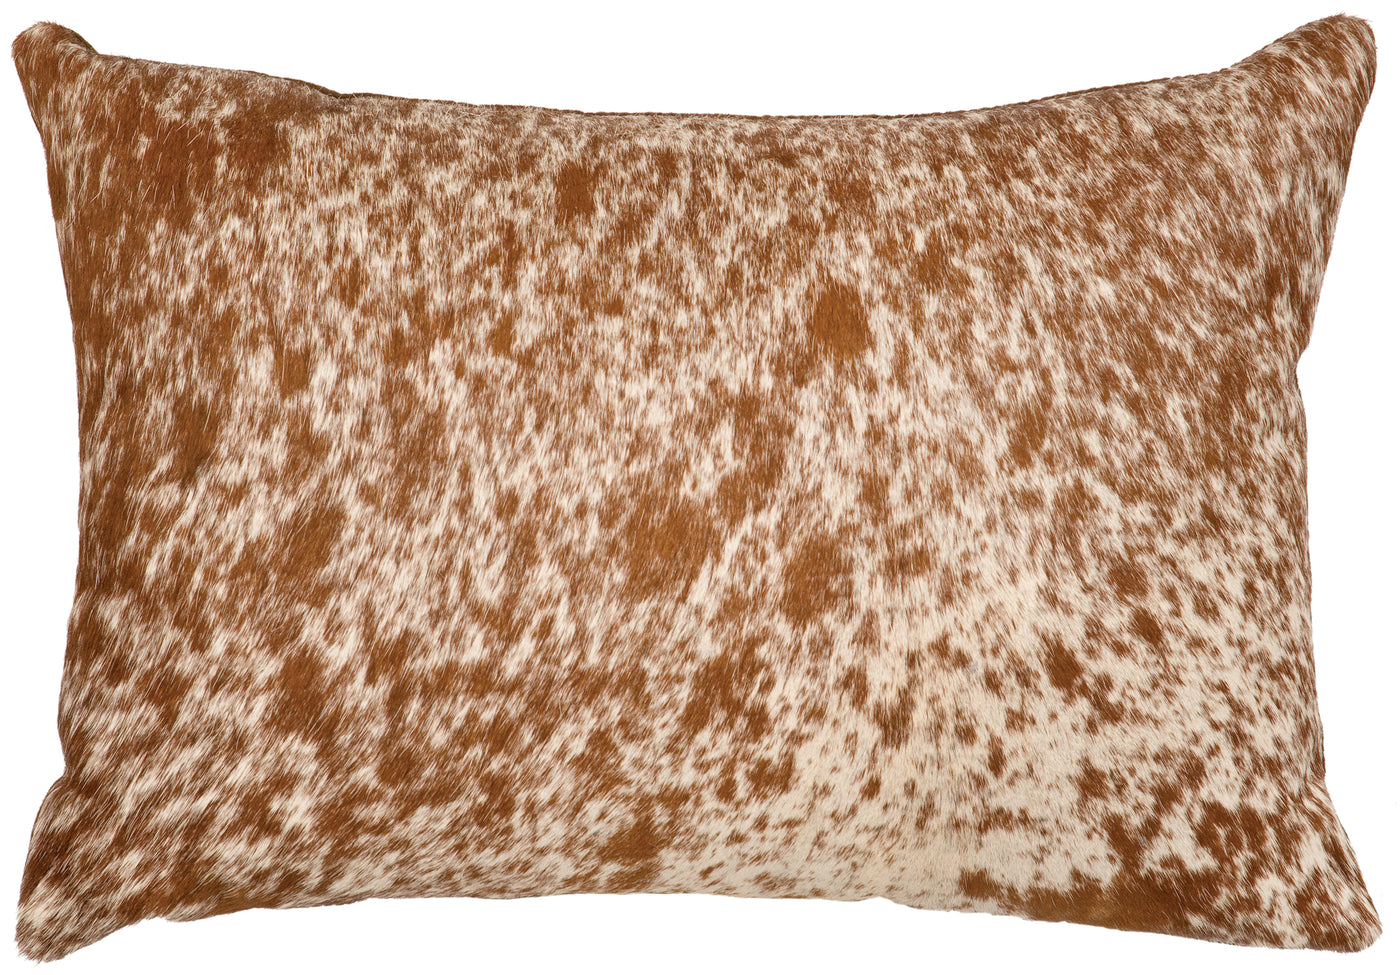 Canvello 斑點淺棕色皮革枕頭 - 皮革背面 - 16 英寸 x 16 英寸